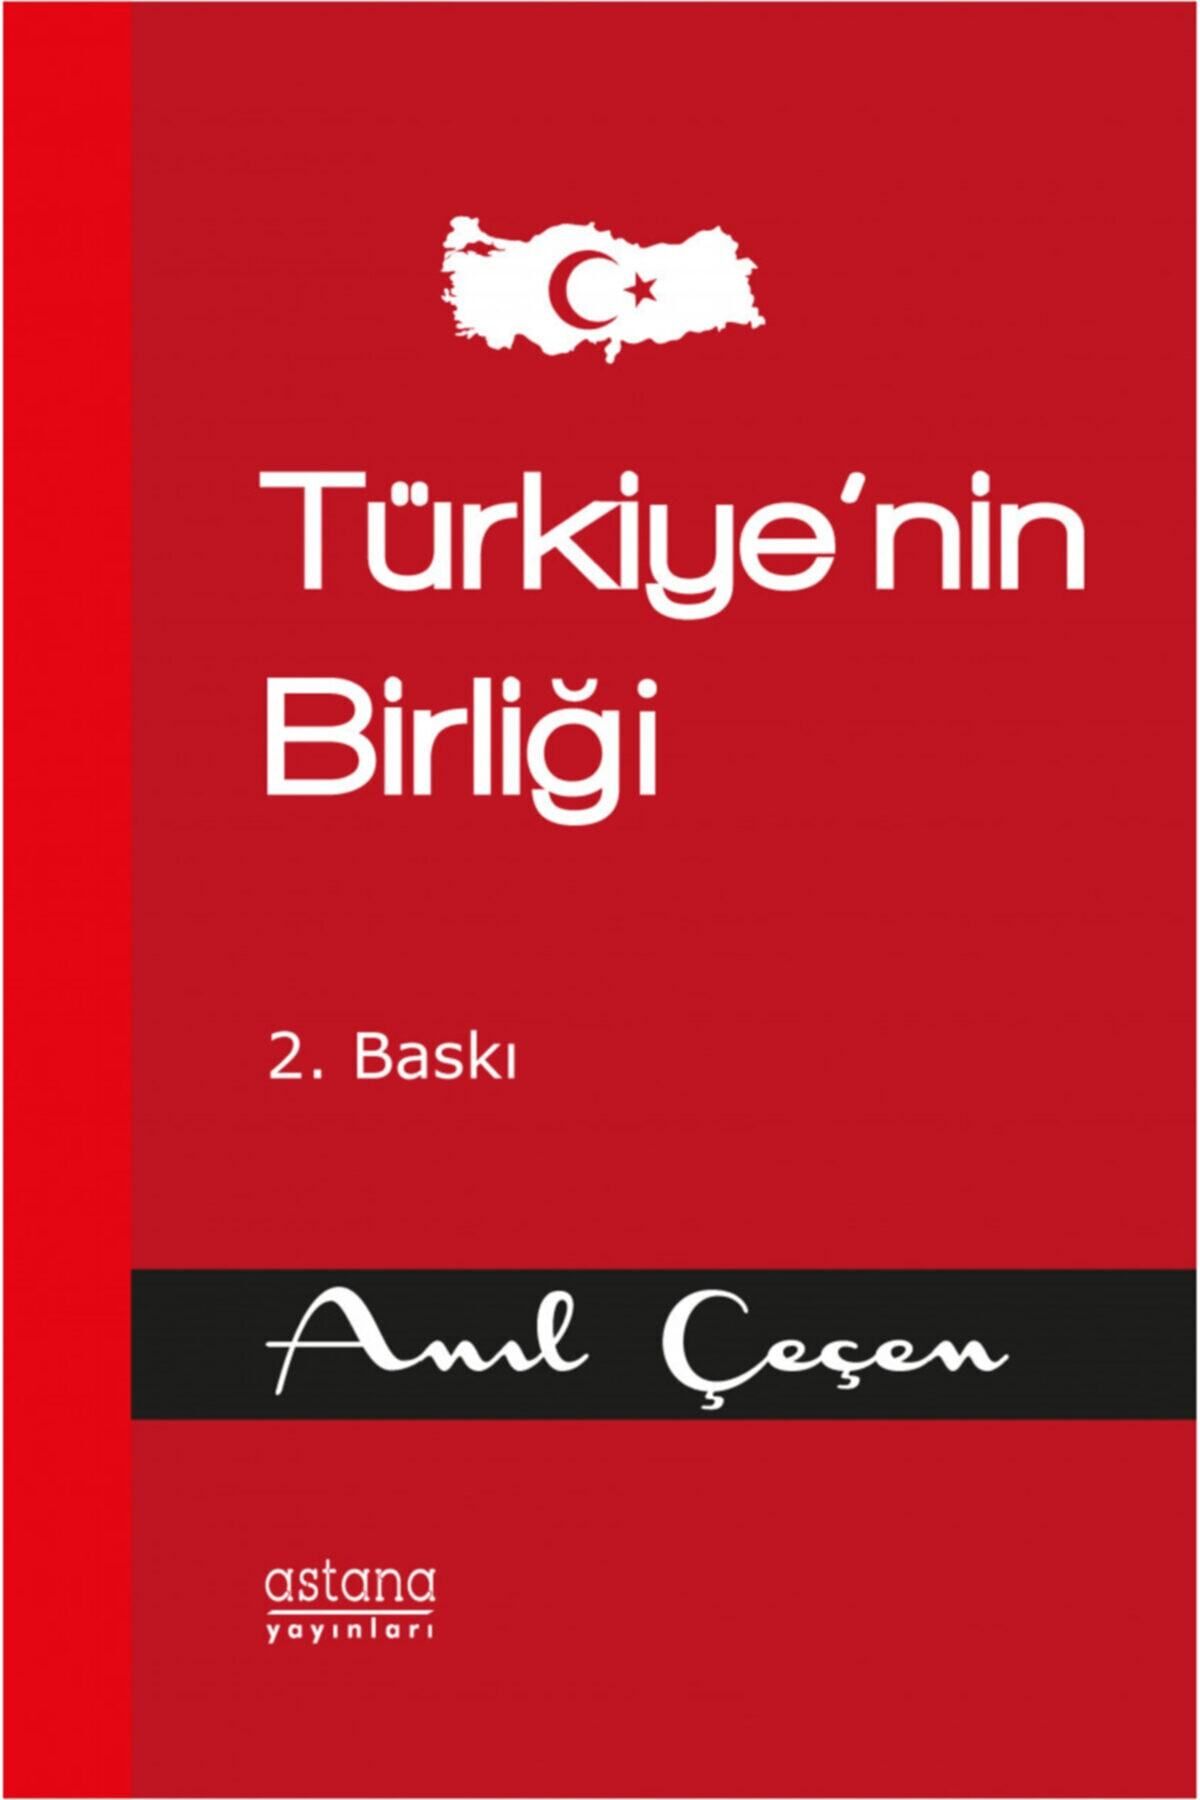 Astana Yayınları Türkiye’nin Birliği (2. Baskı)